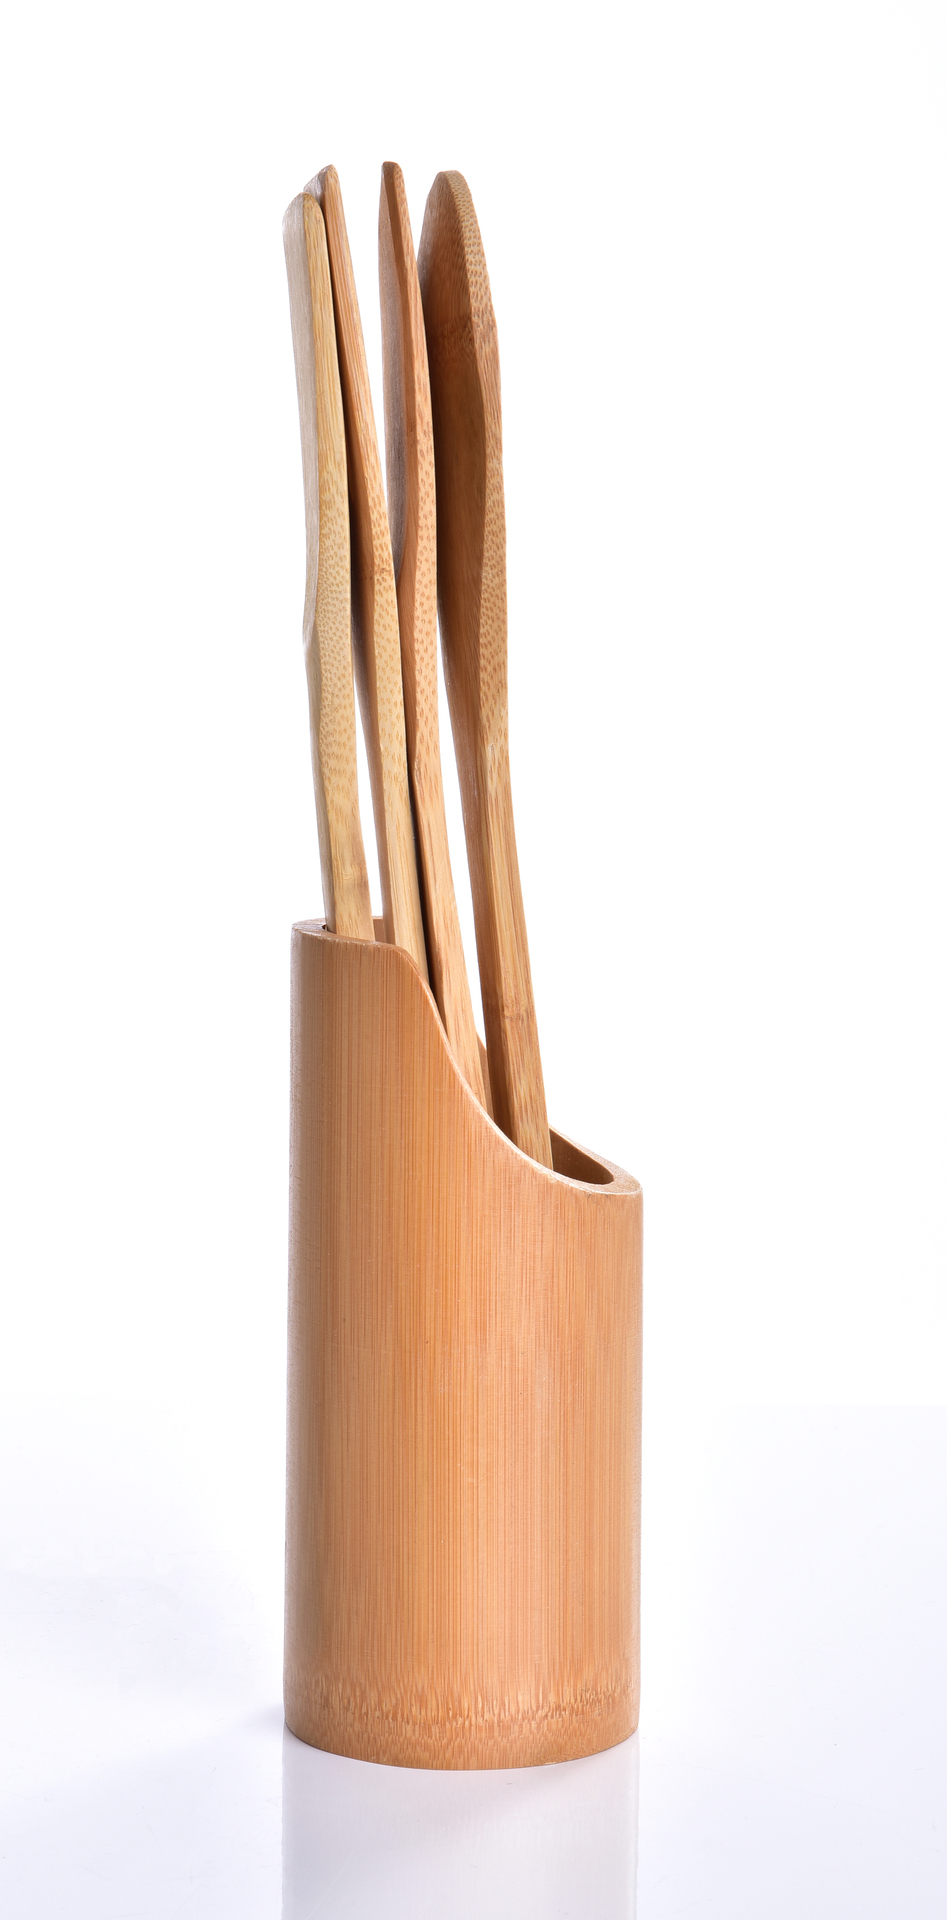 5 ks SADA bambusové kuchyňské náčiní GoEco®